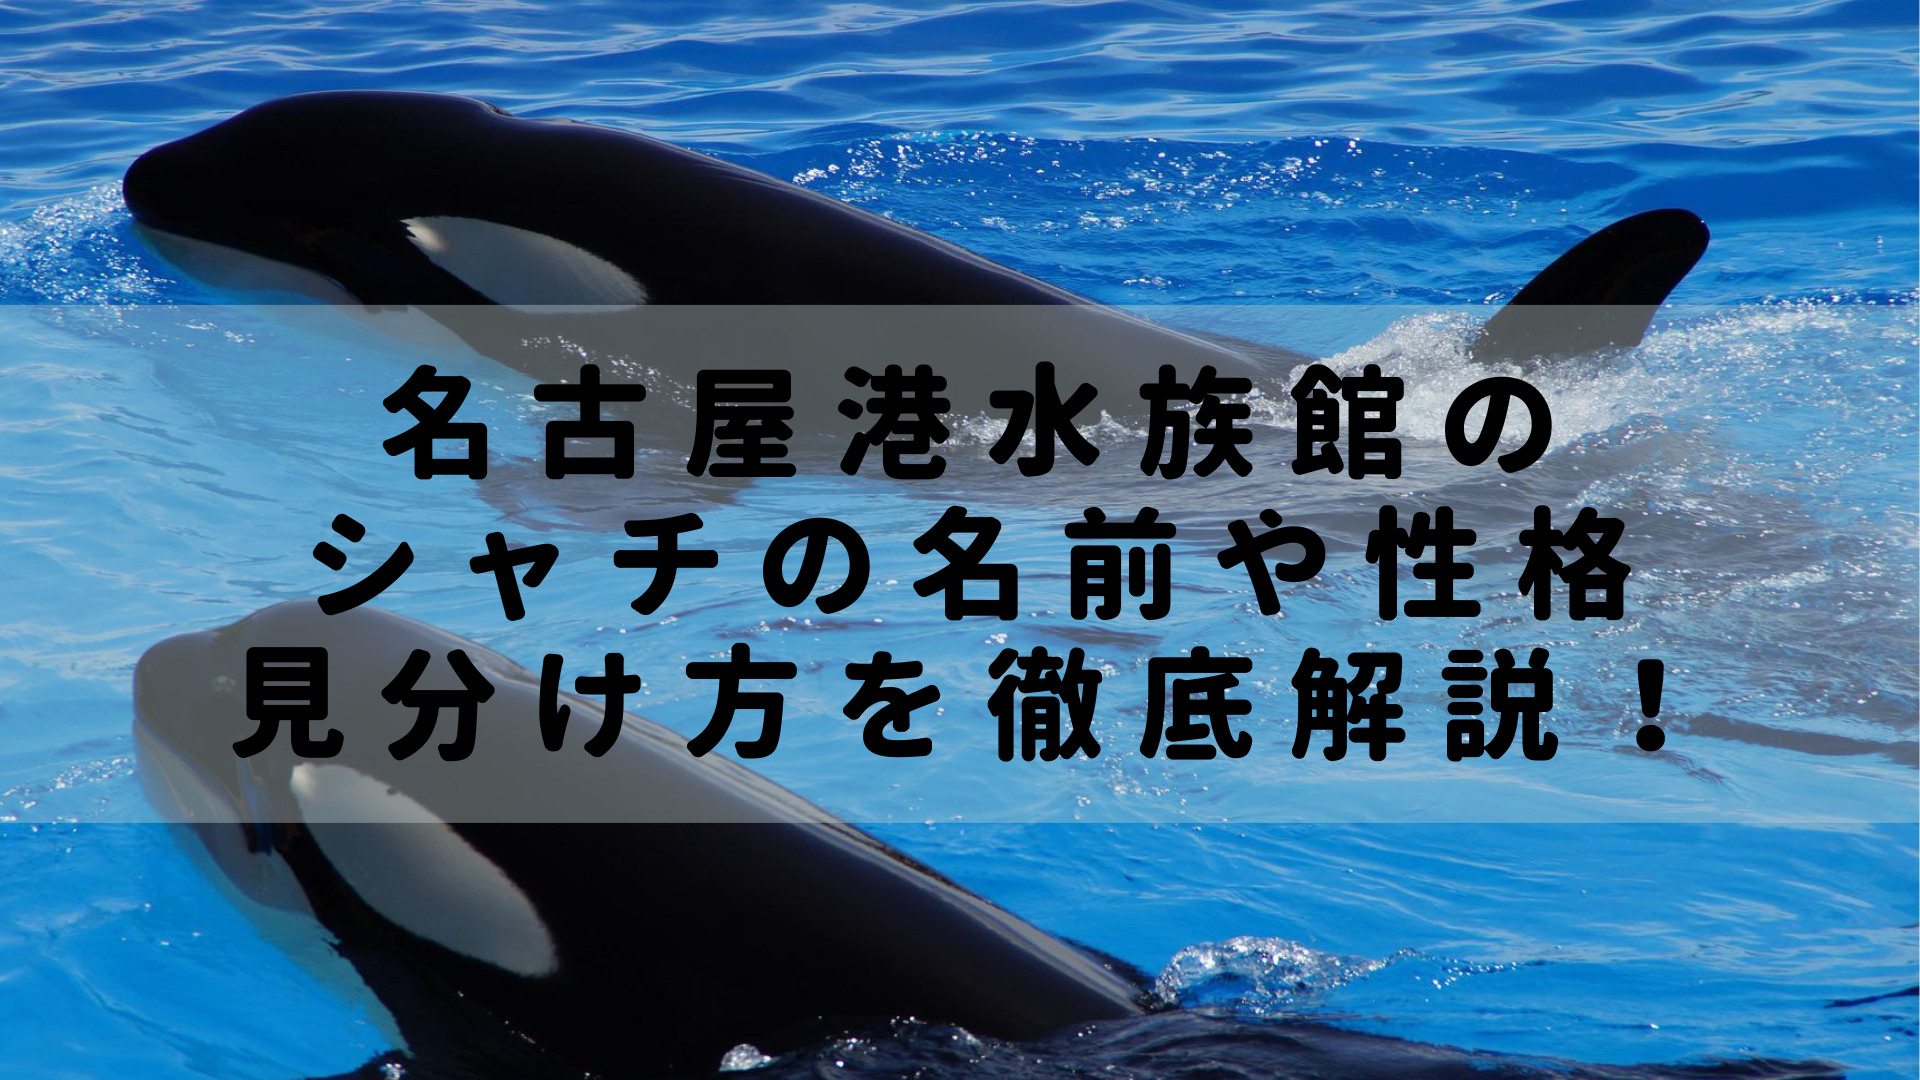 図解 名古屋港水族館3頭のシャチの名前と性格 見分け方を完全解説 Rashiku Like